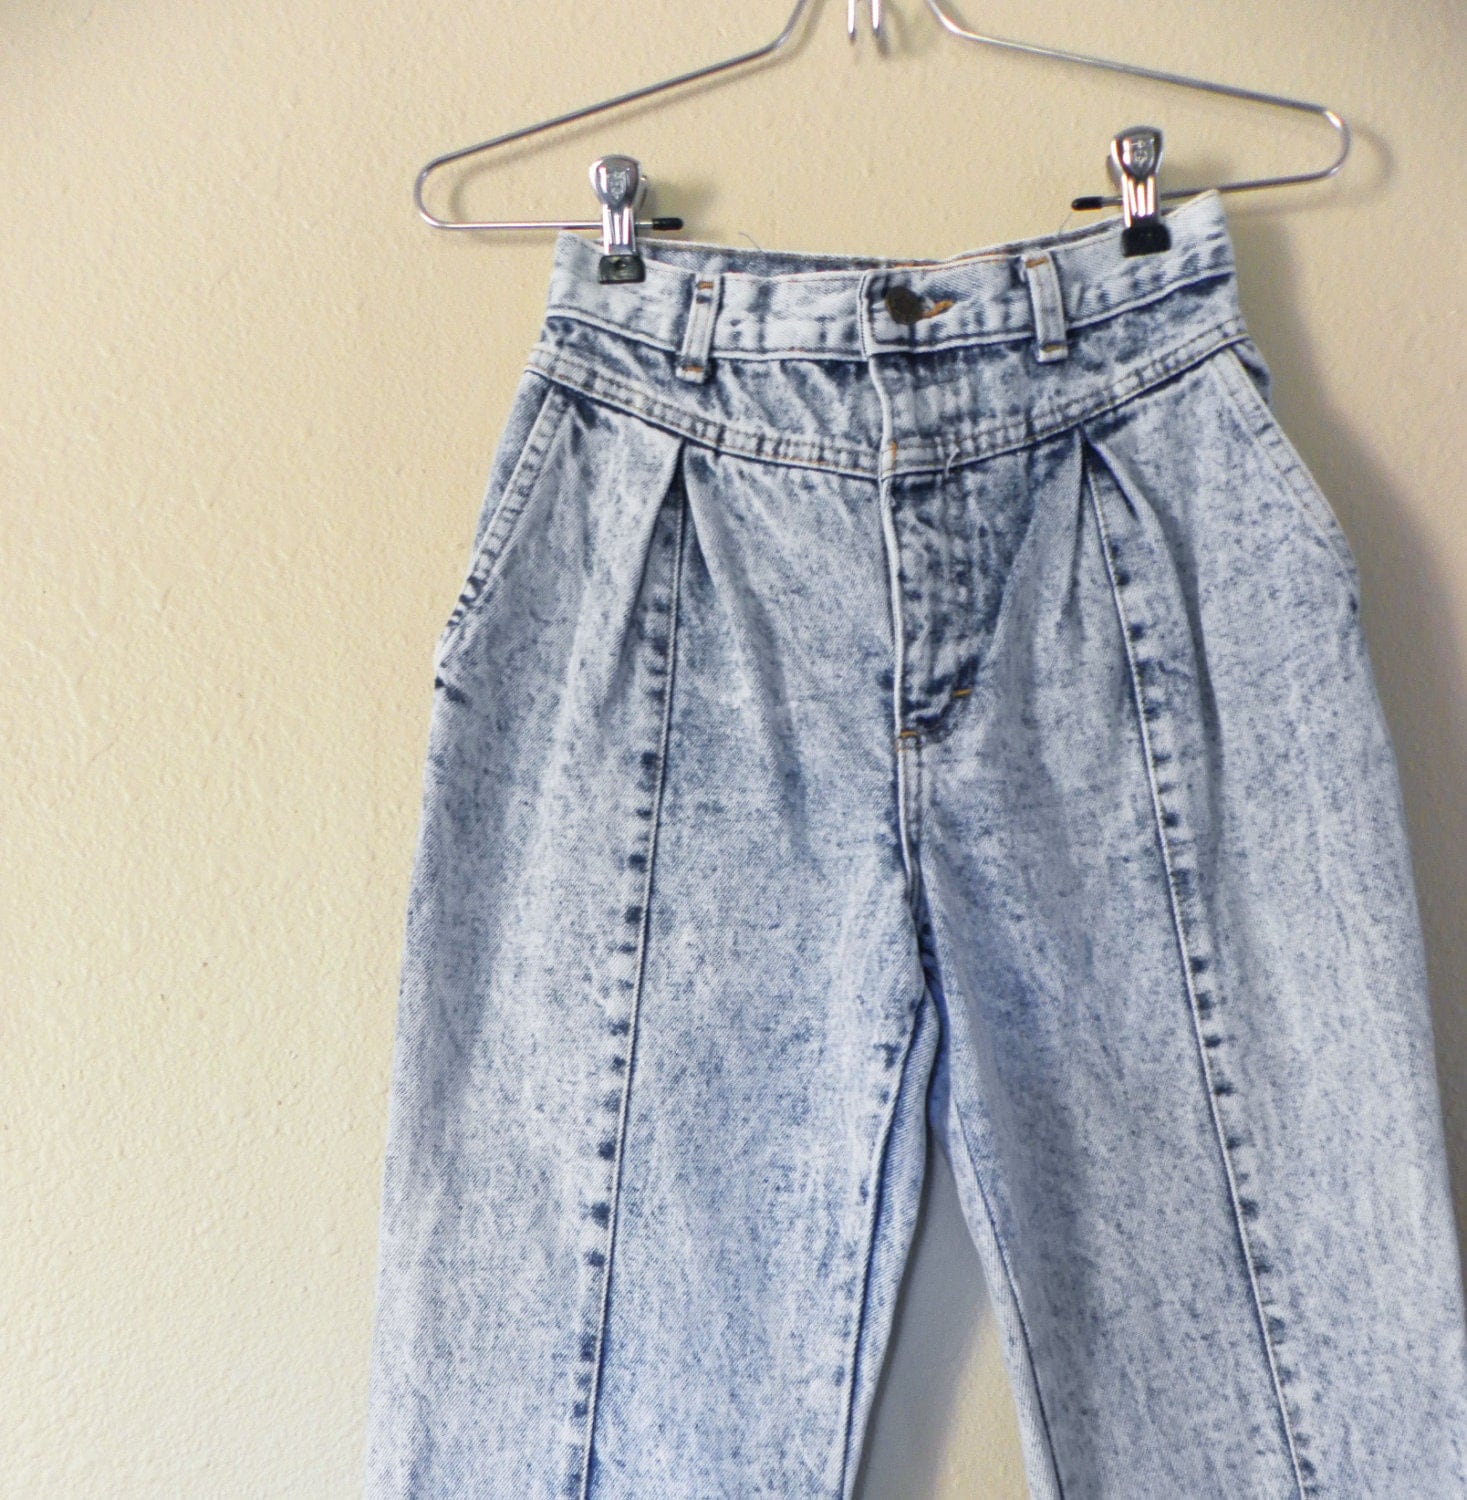 Vintage Acid Wash Jeans 1990s Fashion by RapscallionVintage